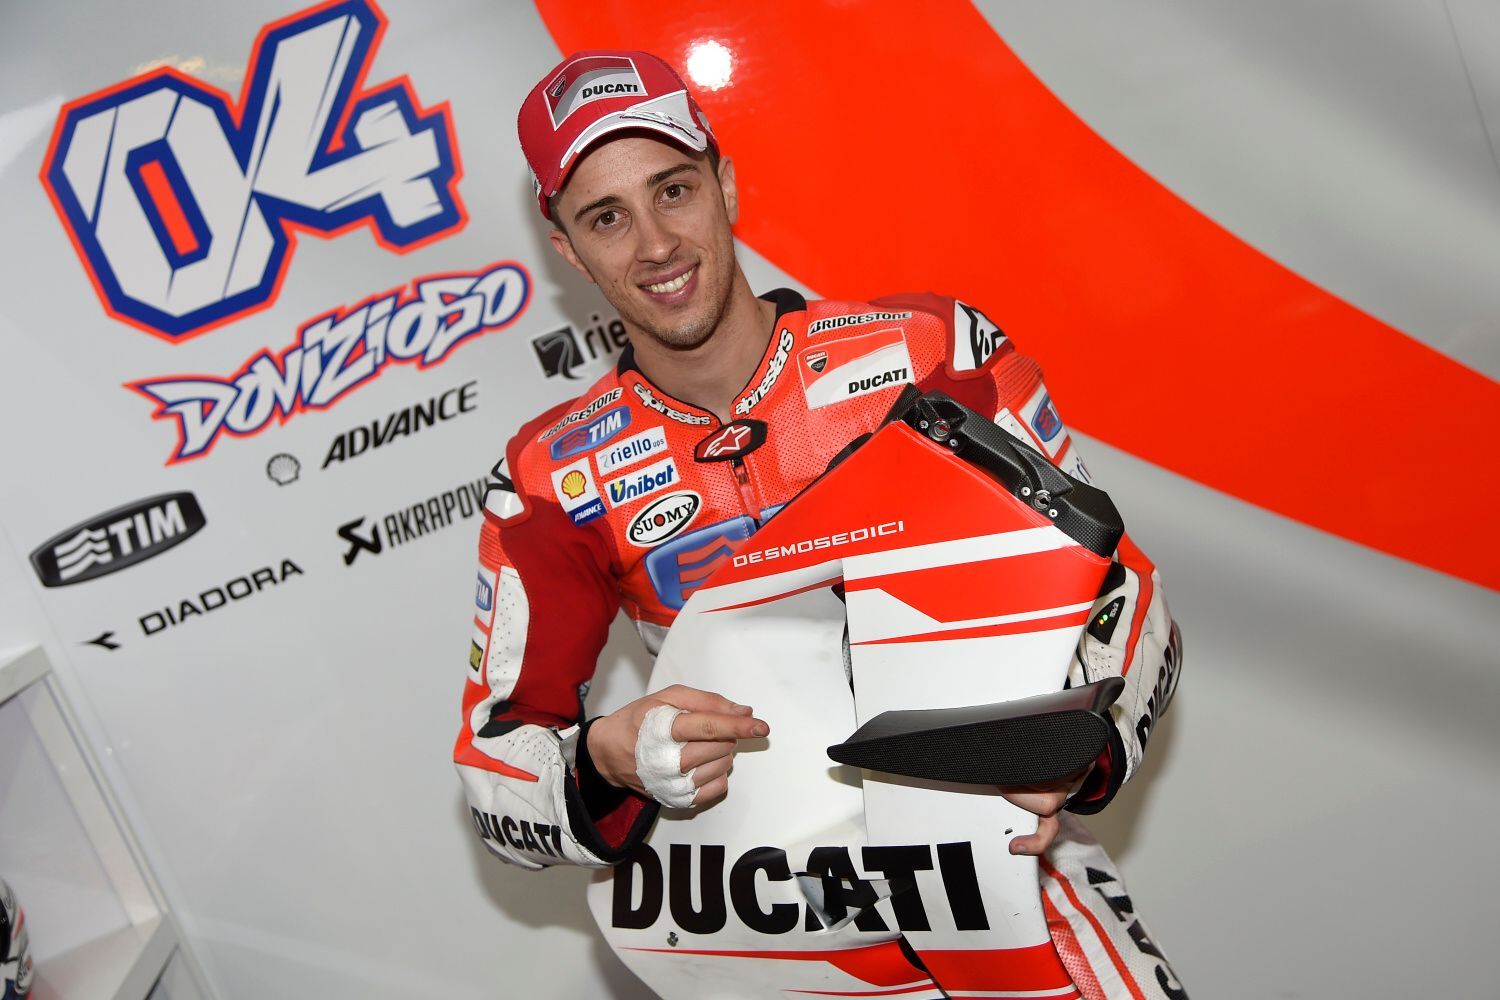 MotoGP 2015: Andrea Dovizioso, Ducati